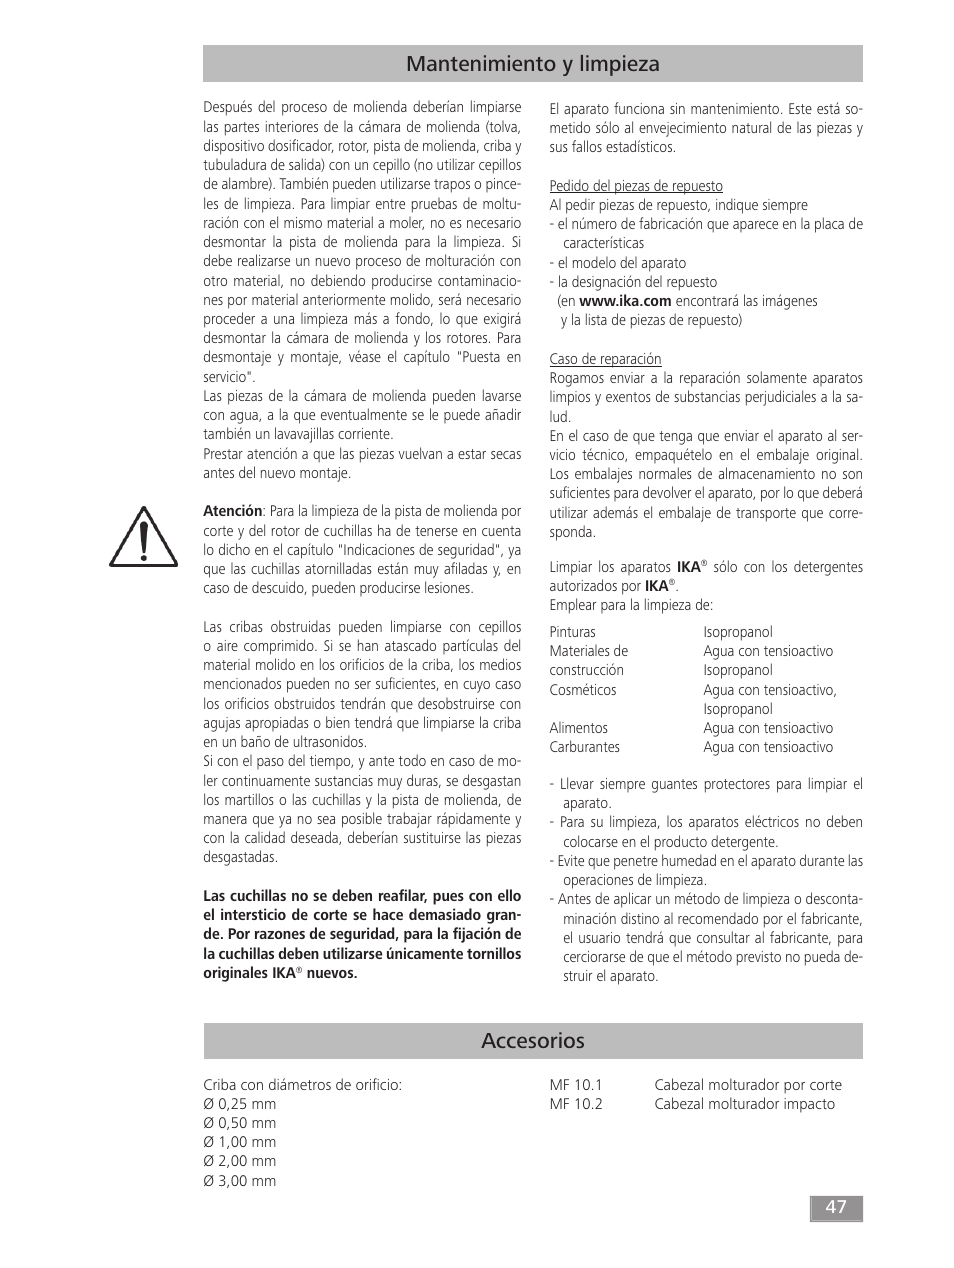 Accesorios, Mantenimiento y limpieza | IKA MF 10 basic User Manual | Page 47 / 140